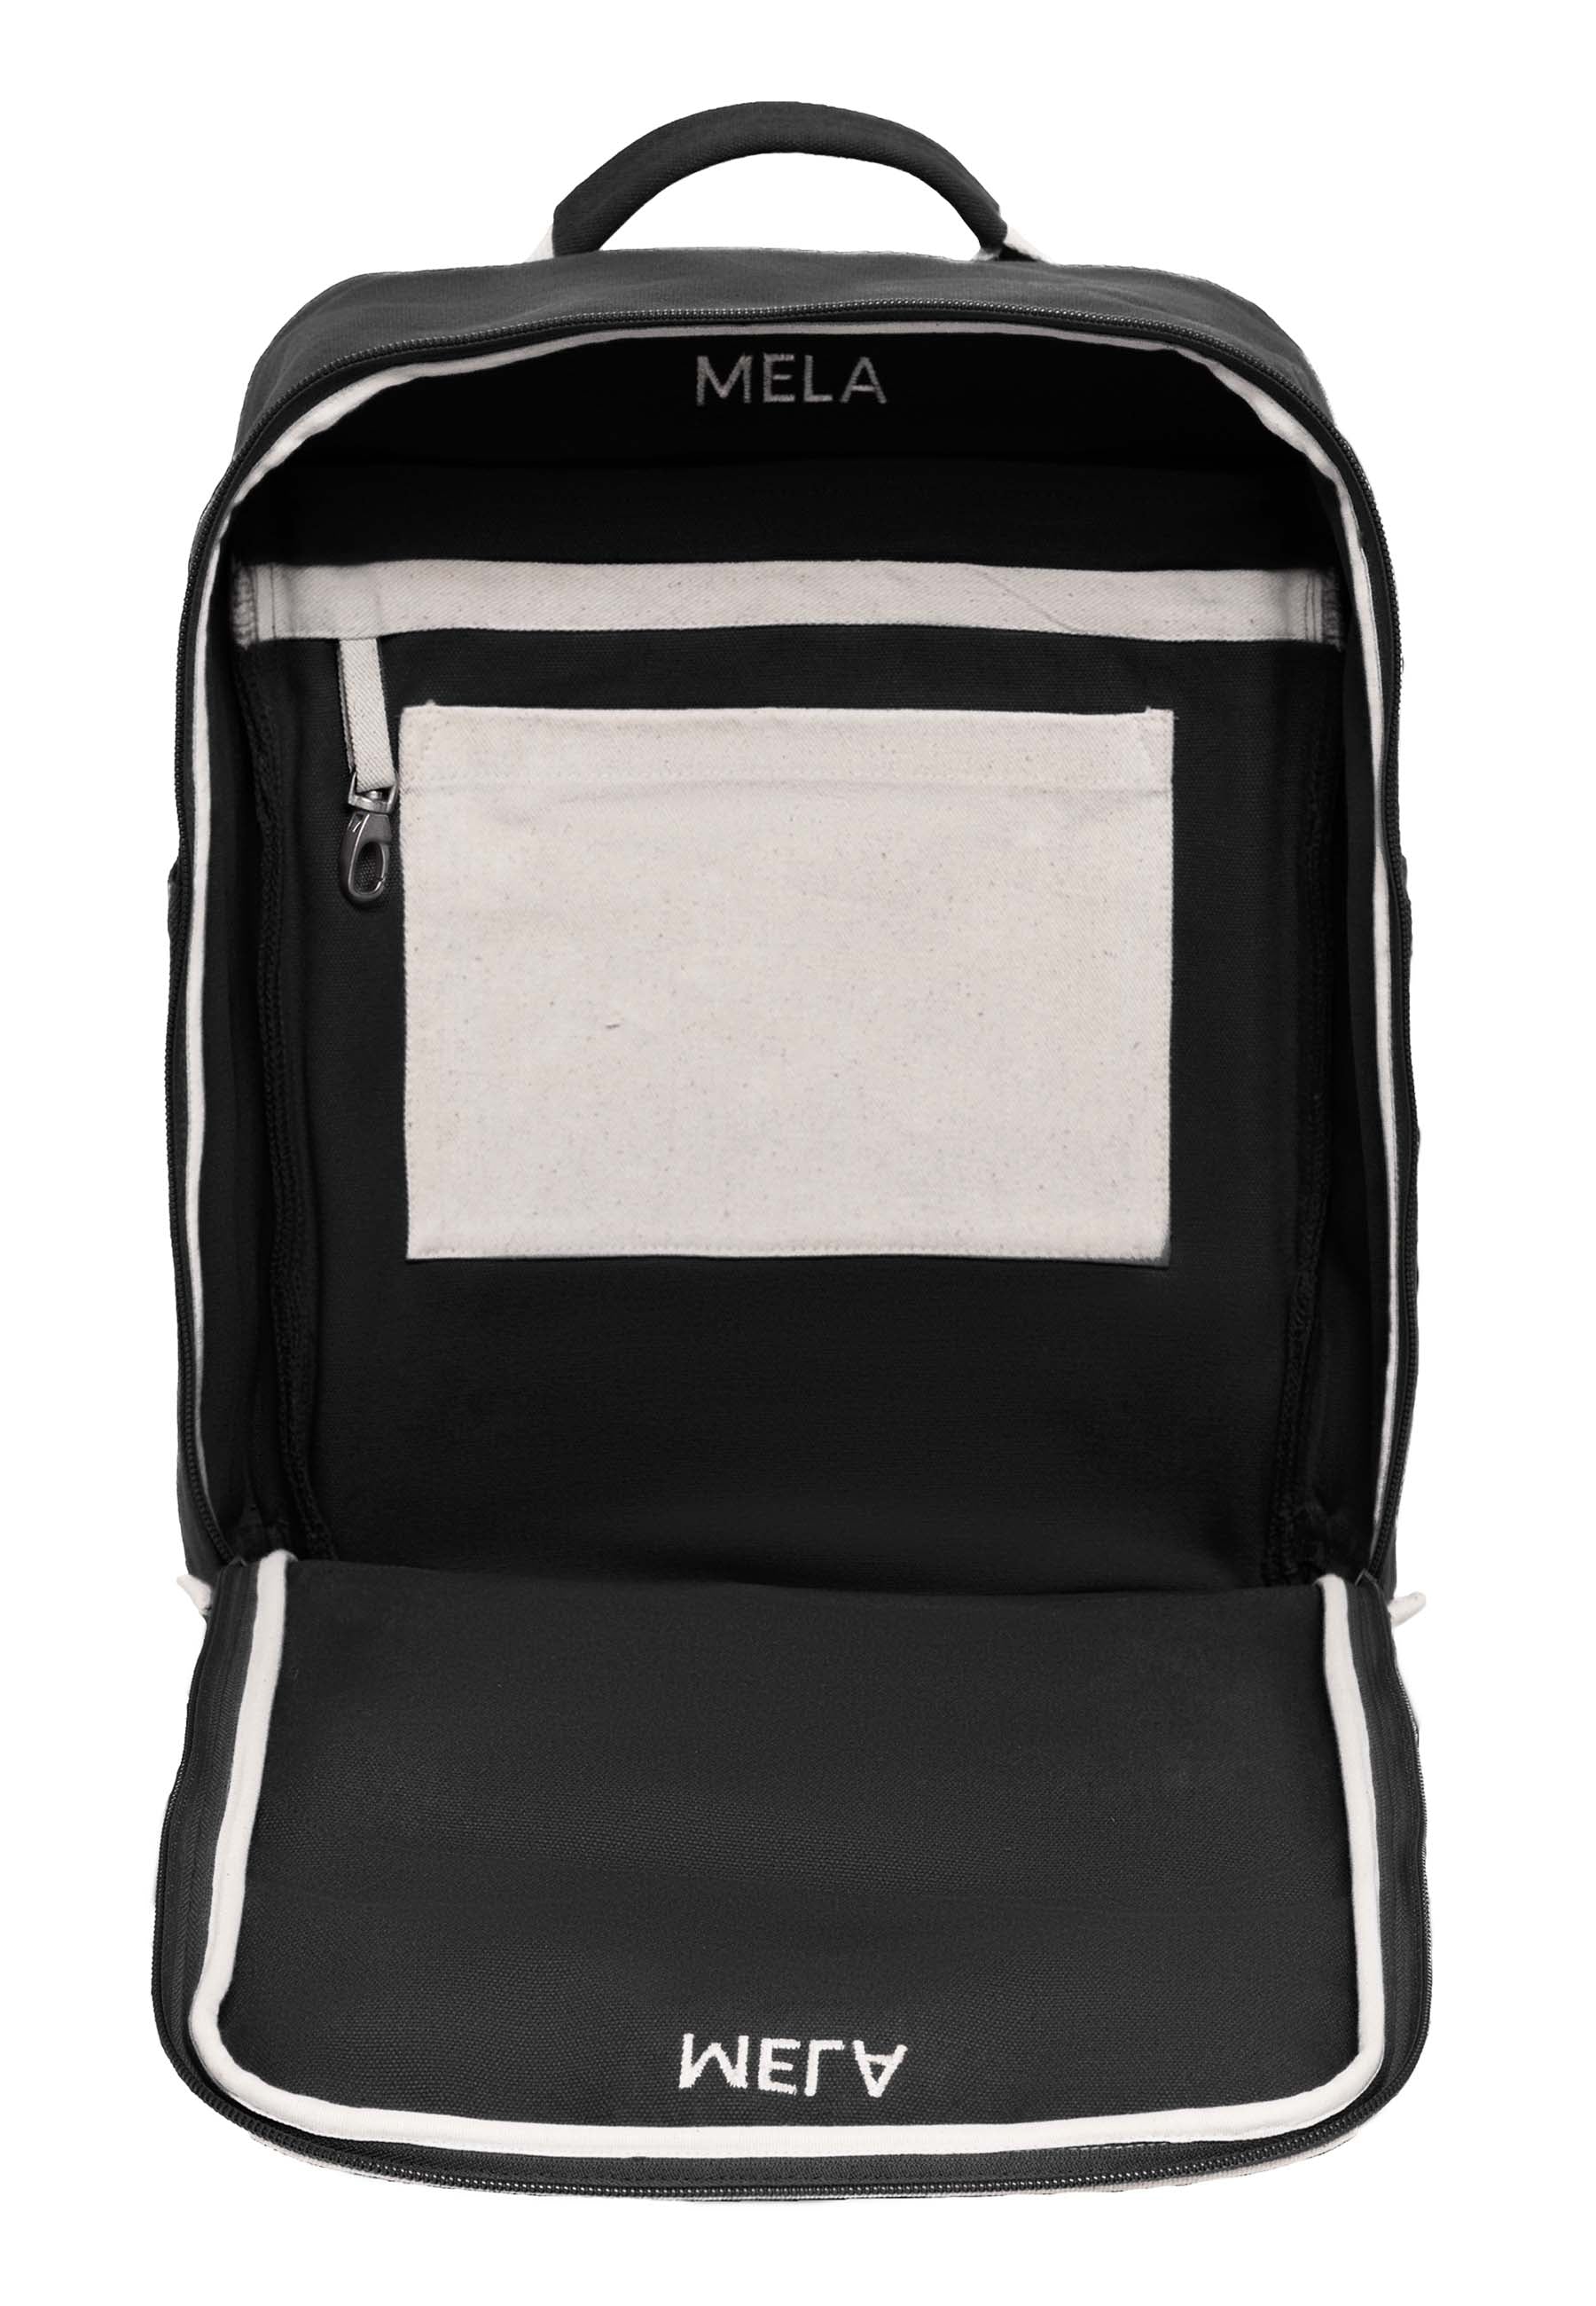 Melawear - MELA II hátizsák - Fekete